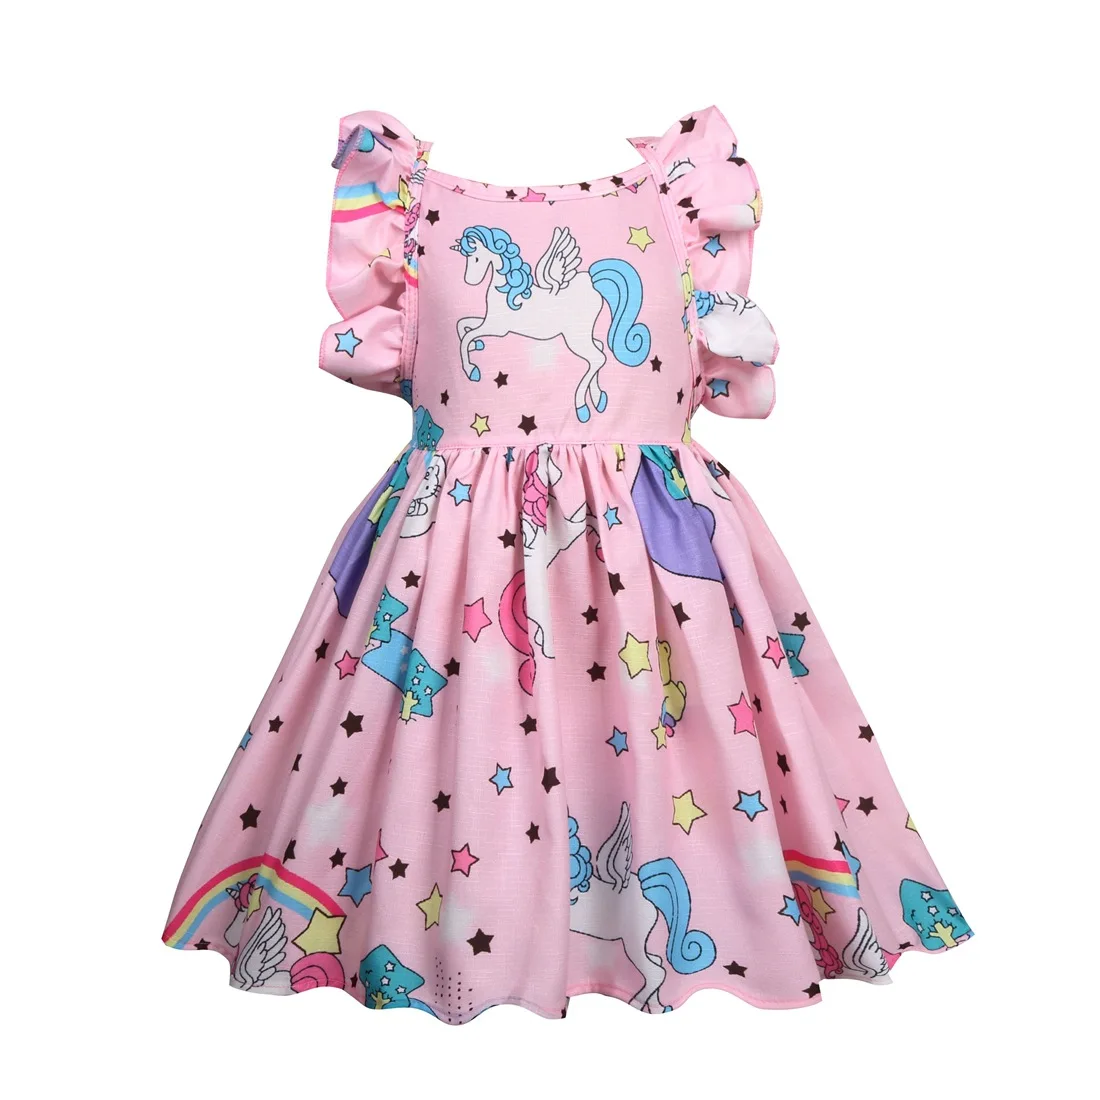 Платья для девочек; Новая креативная детская одежда; милое платье для девочек с единорогом; детское летнее платье; костюм с единорогом; платье принцессы - Цвет: Розовый